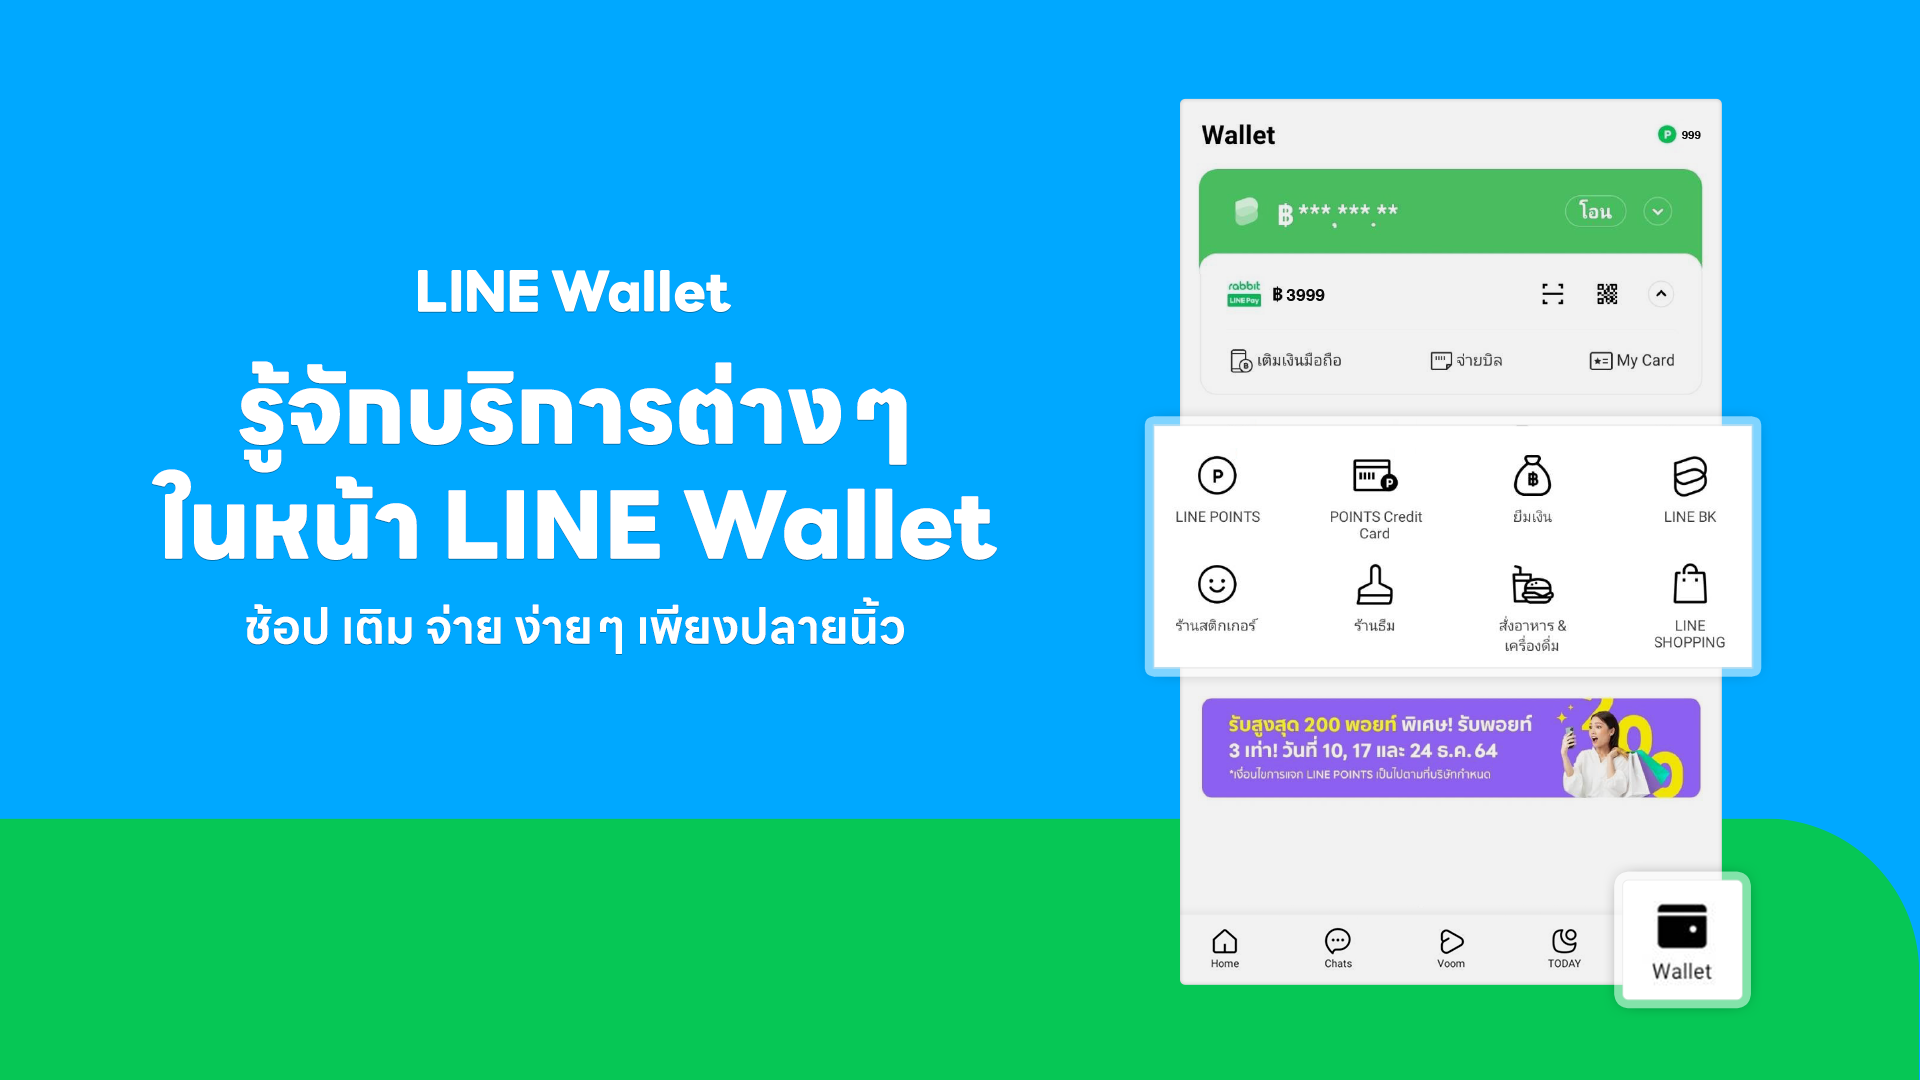 มากกว่าแค่การจ่ายเงิน! LINE Wallet แท็บที่ห้าบนแอป LINE ฮับรวมไลฟ์สไตล์ "ช้อป ยืม โอน จ่าย" รับคนไทยปรับตัว ซื้อ-จ่ายออนไลน์คล่อง